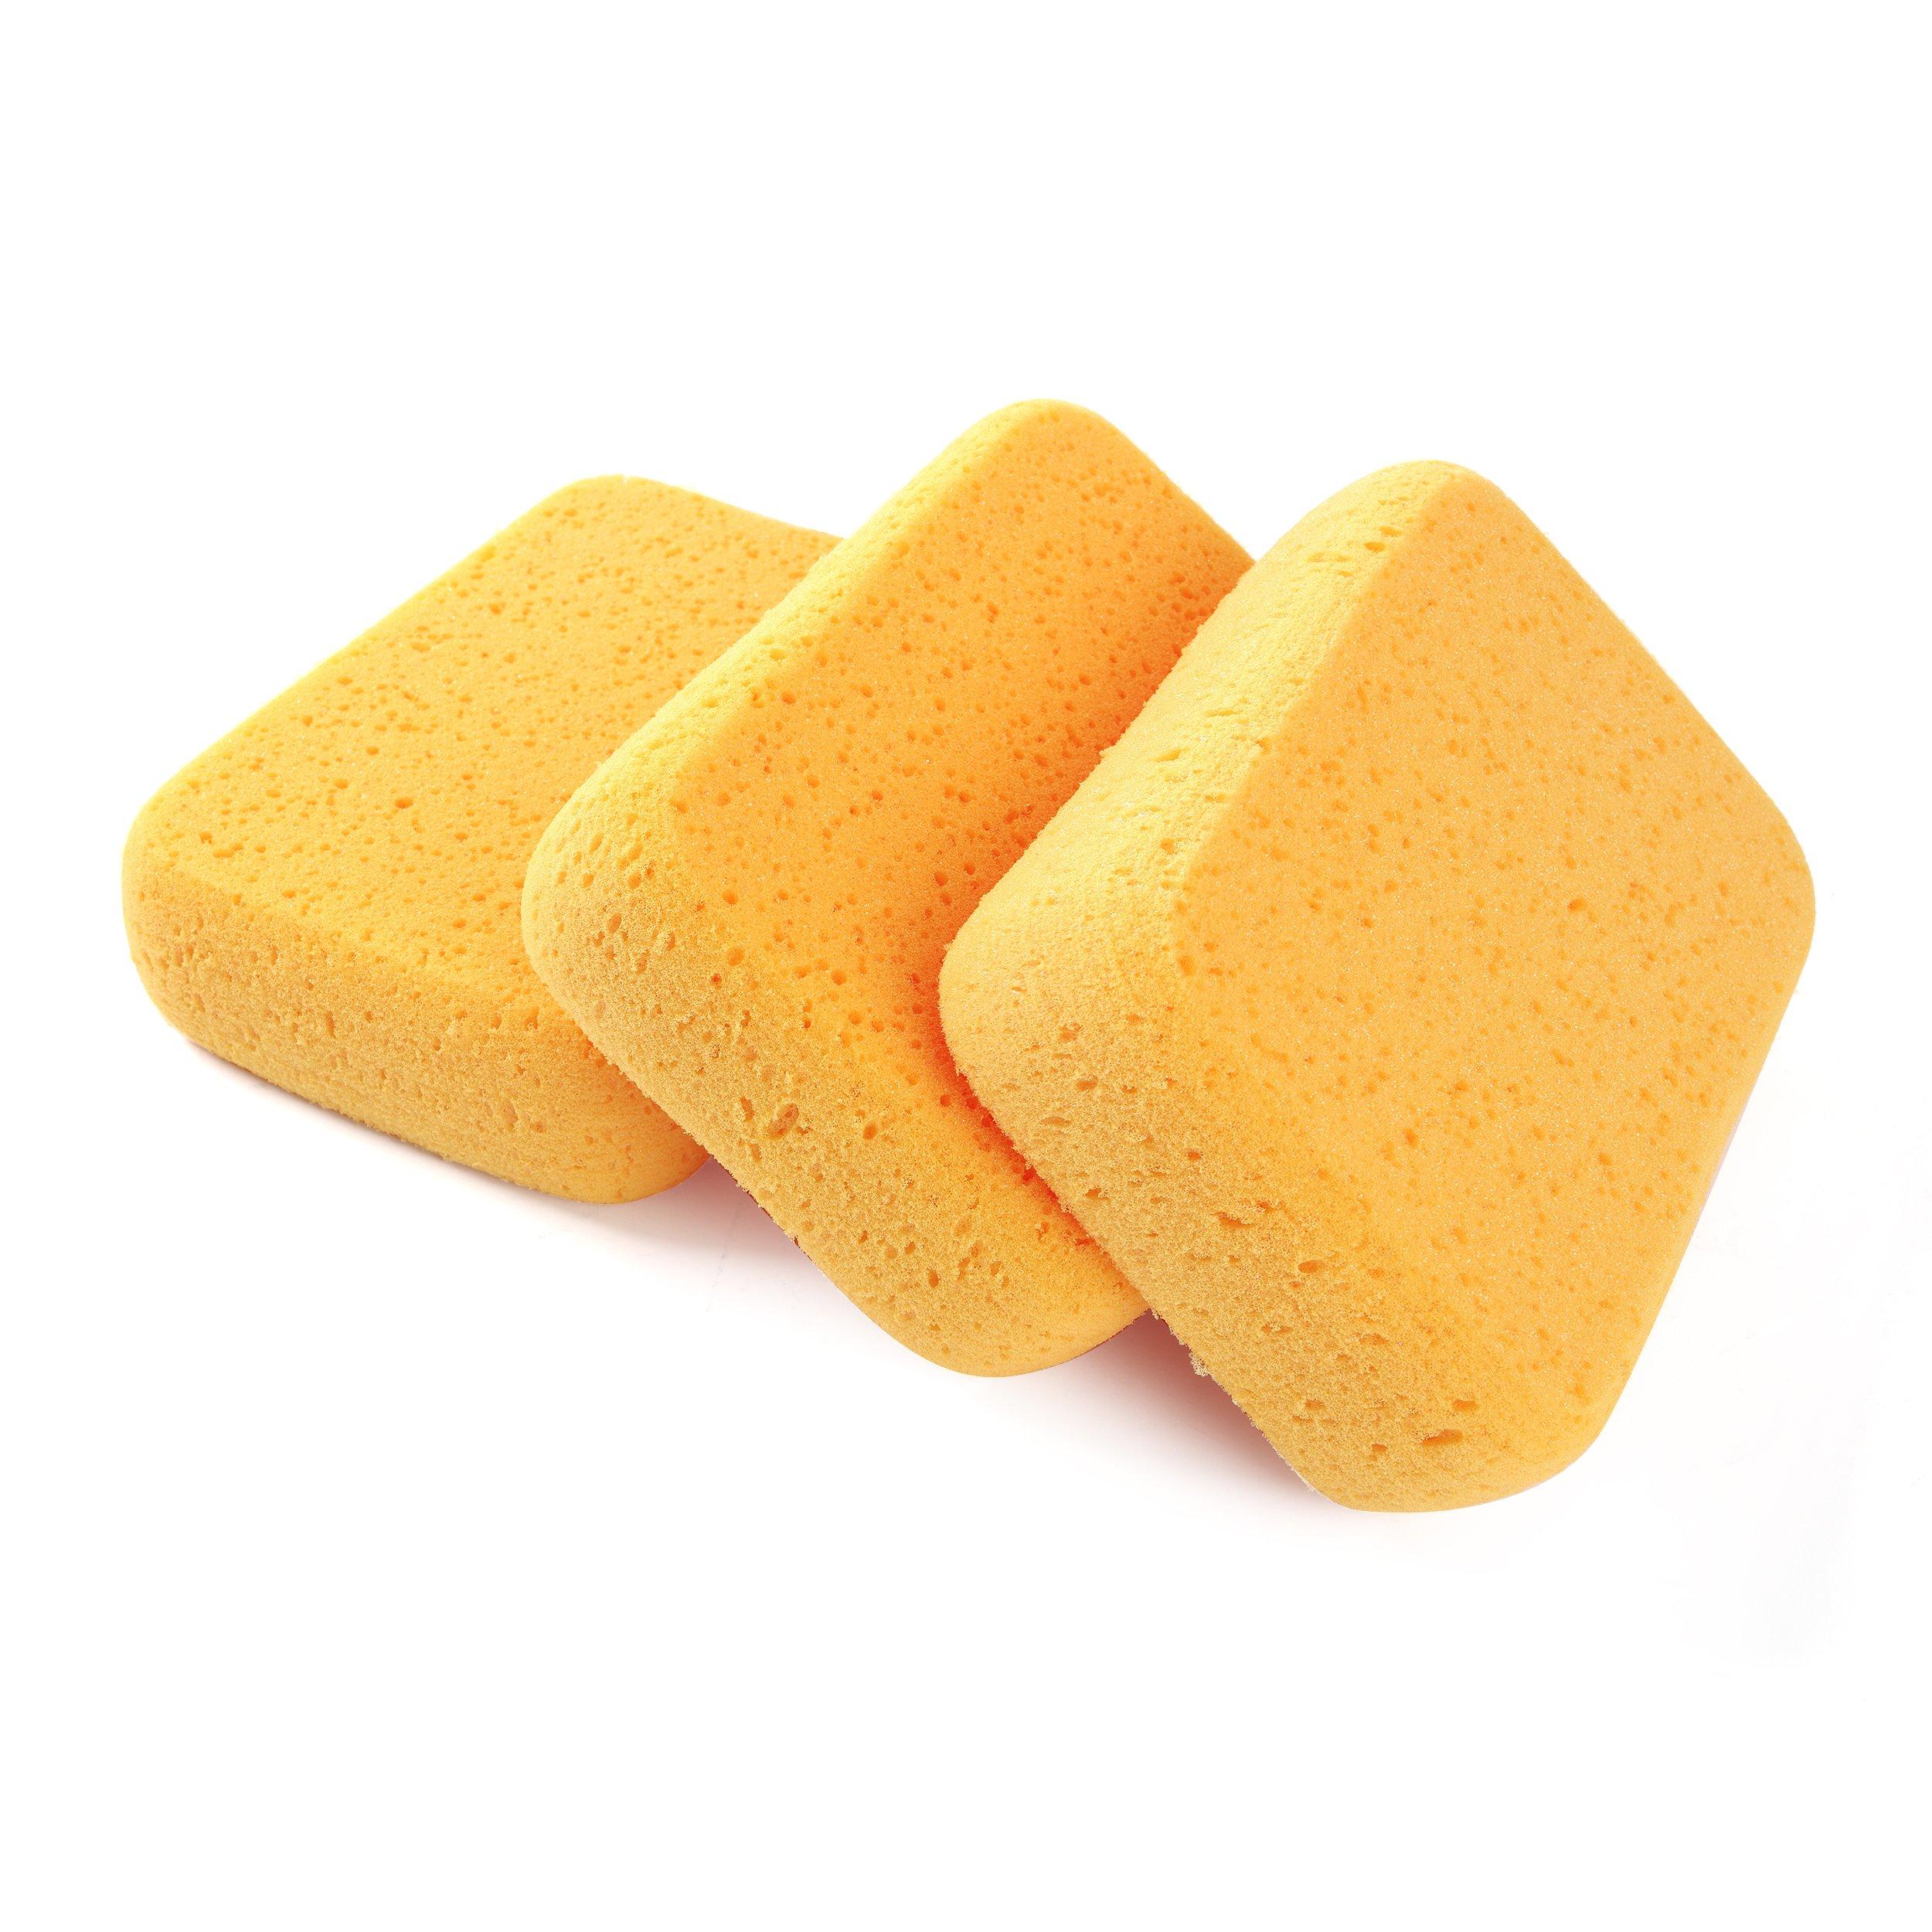 Goldblatt Grout Sponge - 3pk.